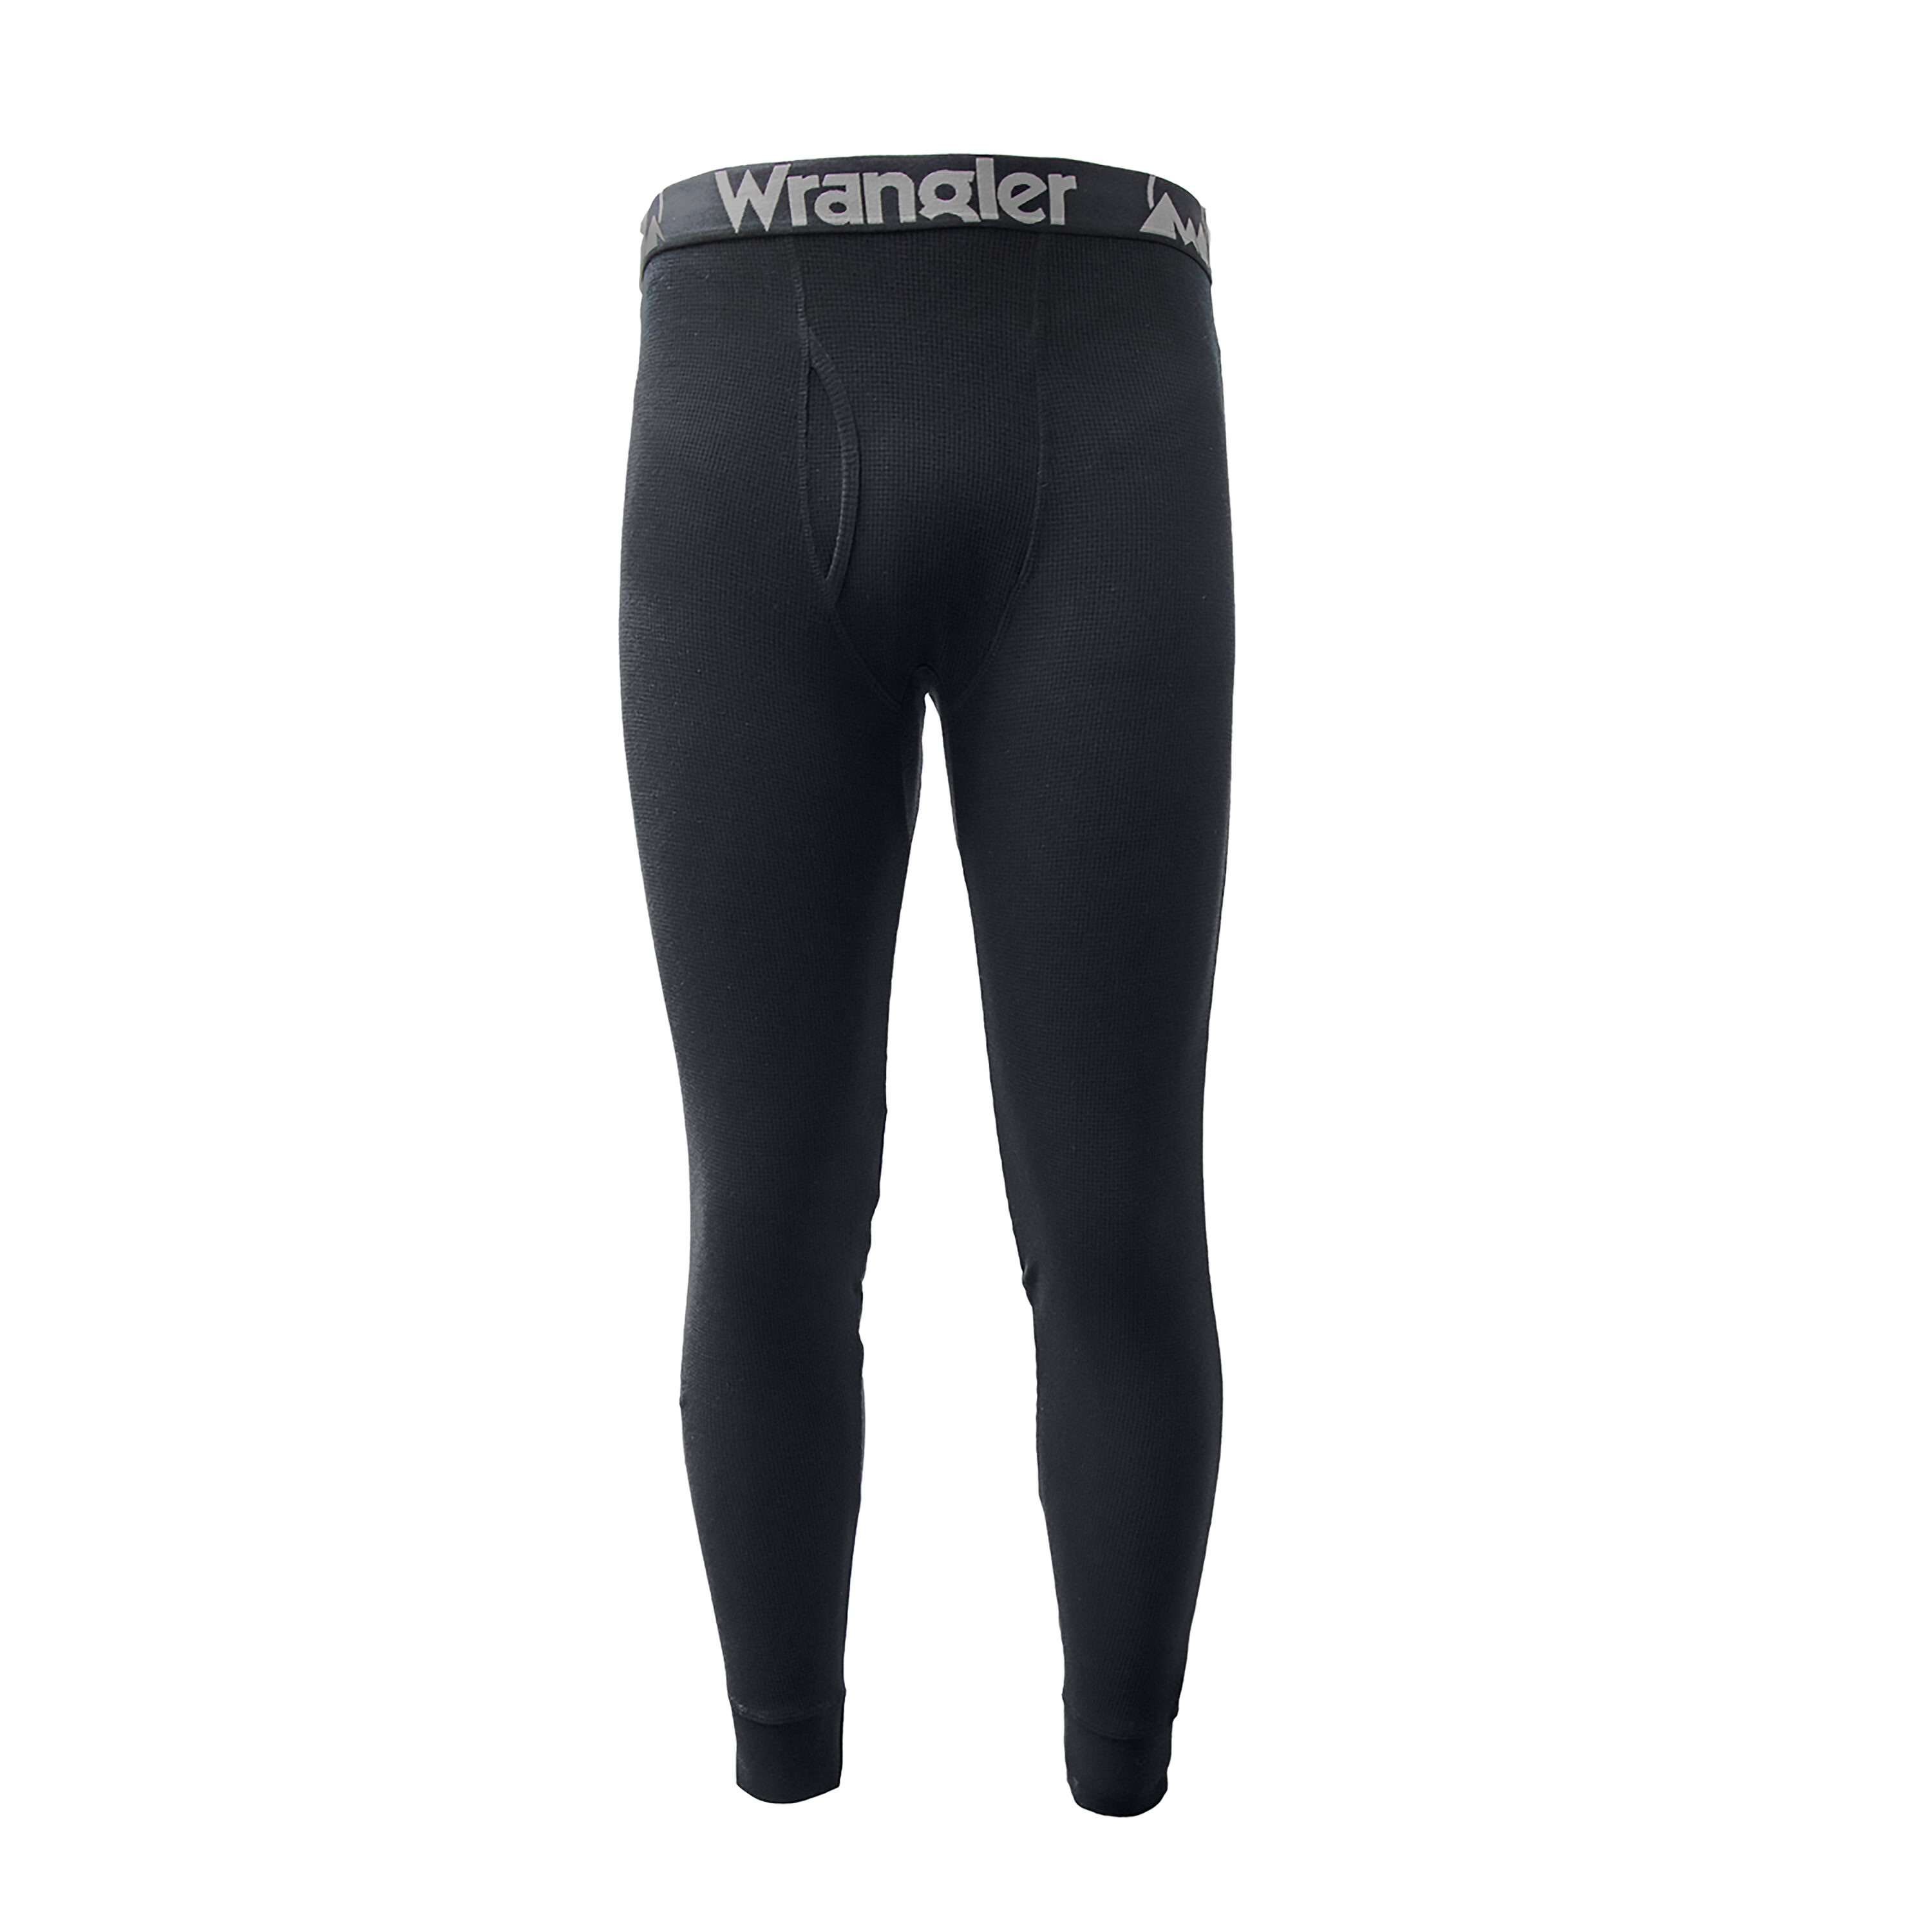 Wrangler Workwear Men's Heavy Weight Cotton Raschel Thermal Pant 